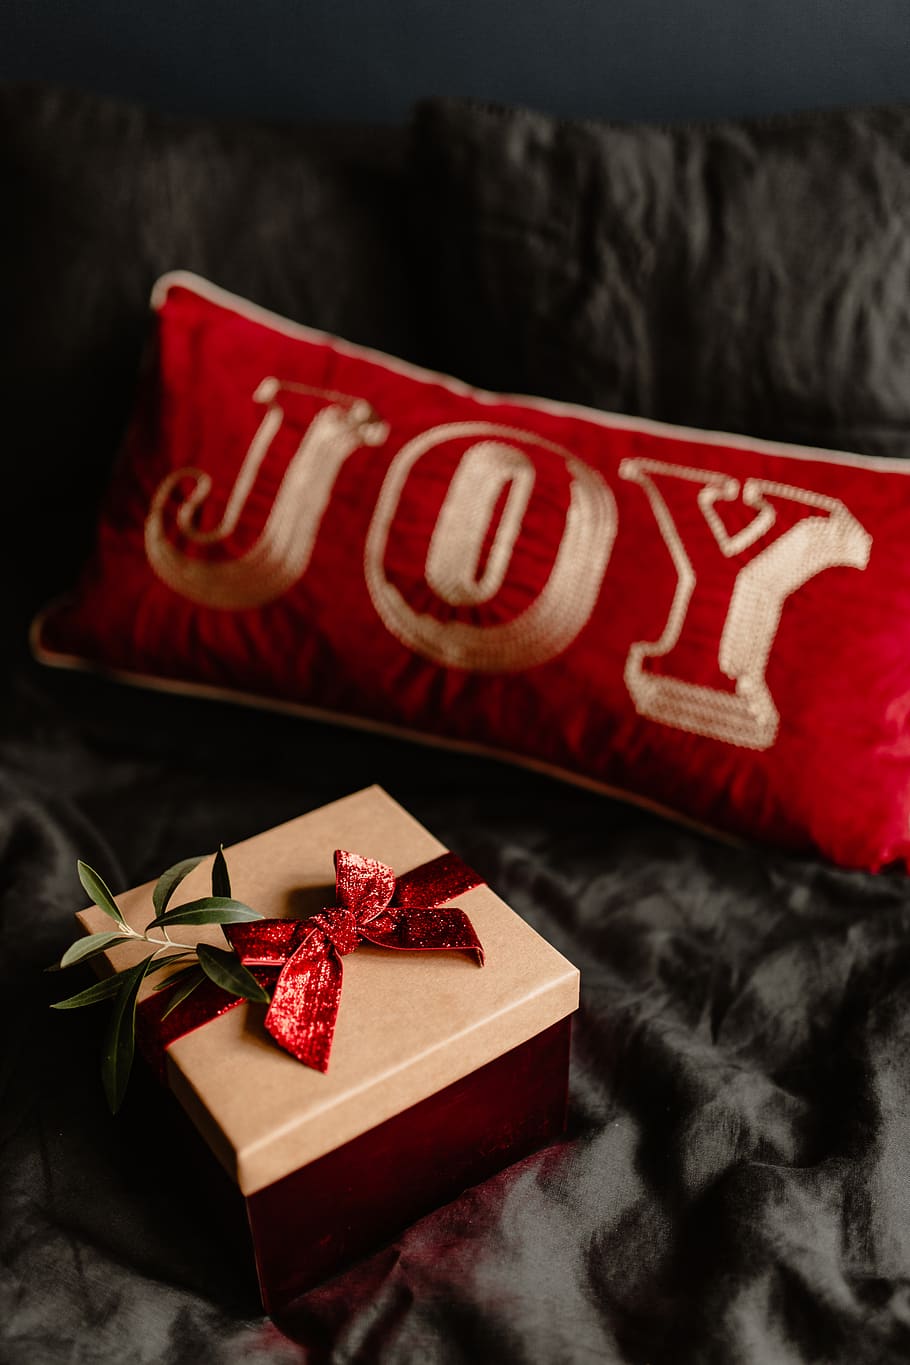 regalos de navidad, regalos, navidad, ropa de cama, cama, rojo, negro, diciembre, invierno, humor oscuro